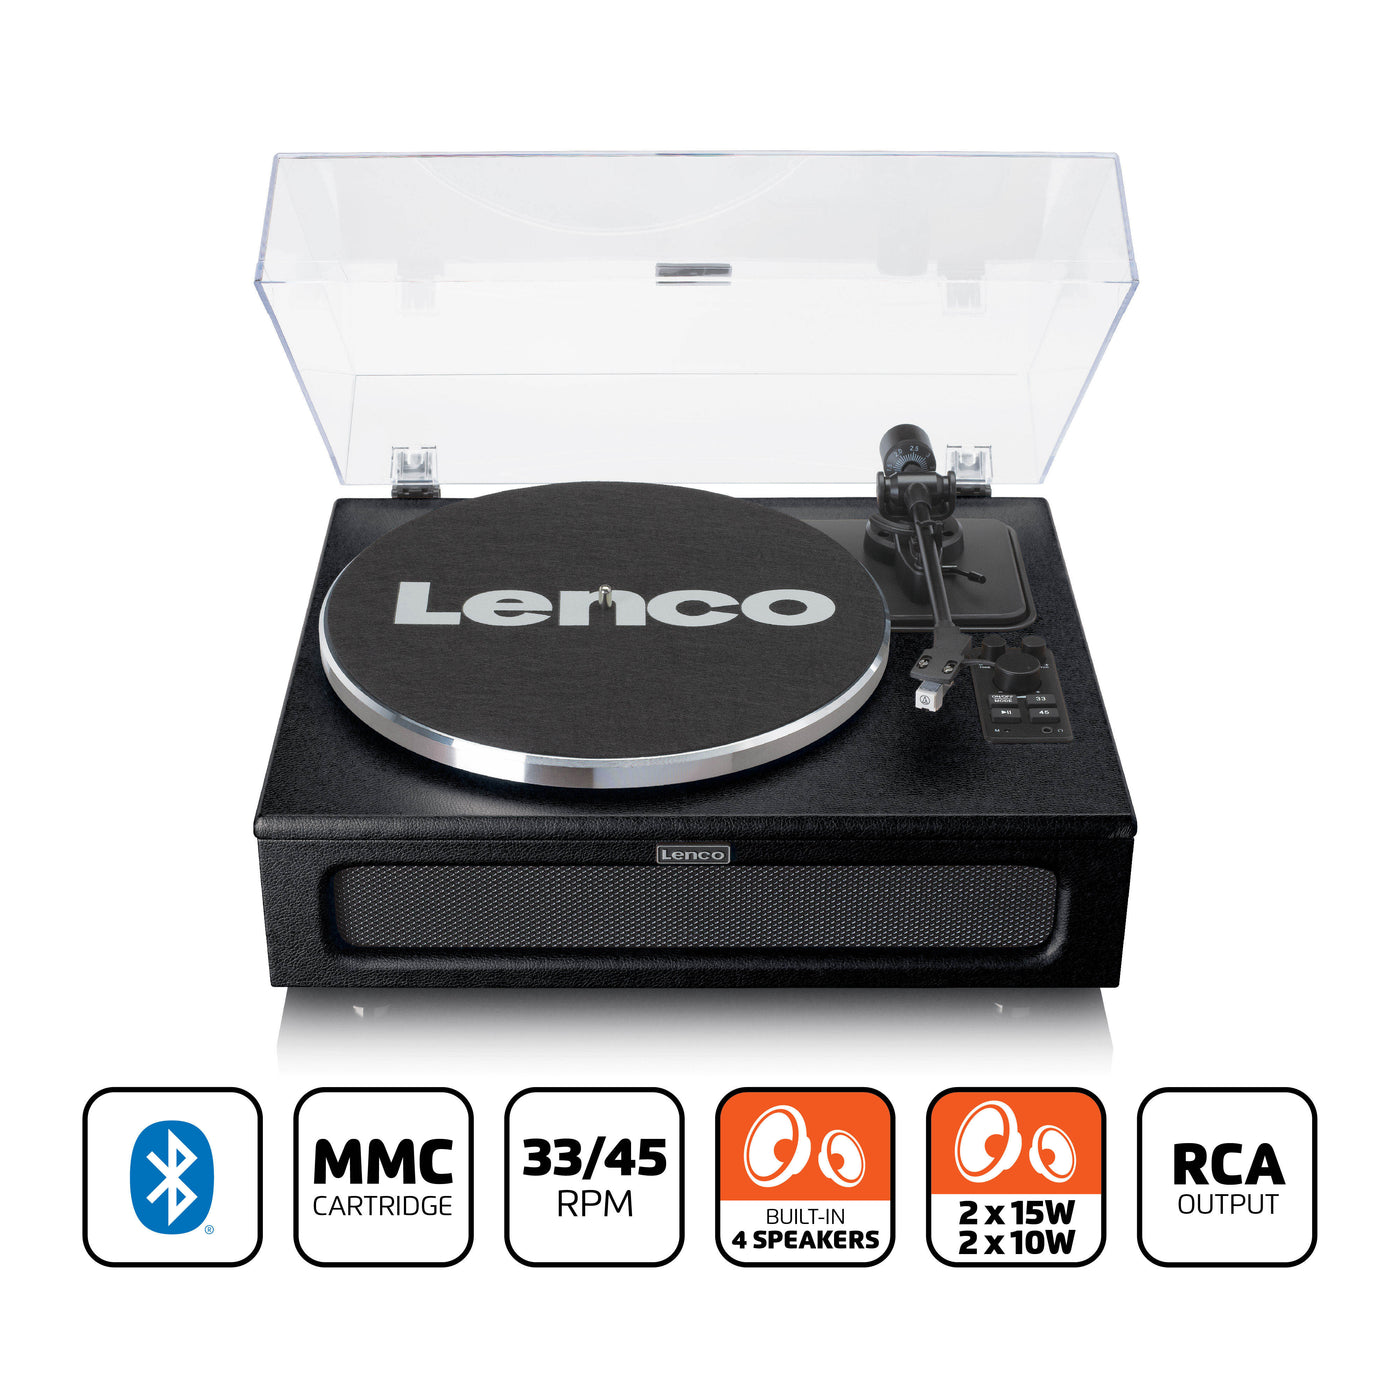 LENCO LS-430BK - Gramofon z 4 wbudowanymi głośnikami - Czarny